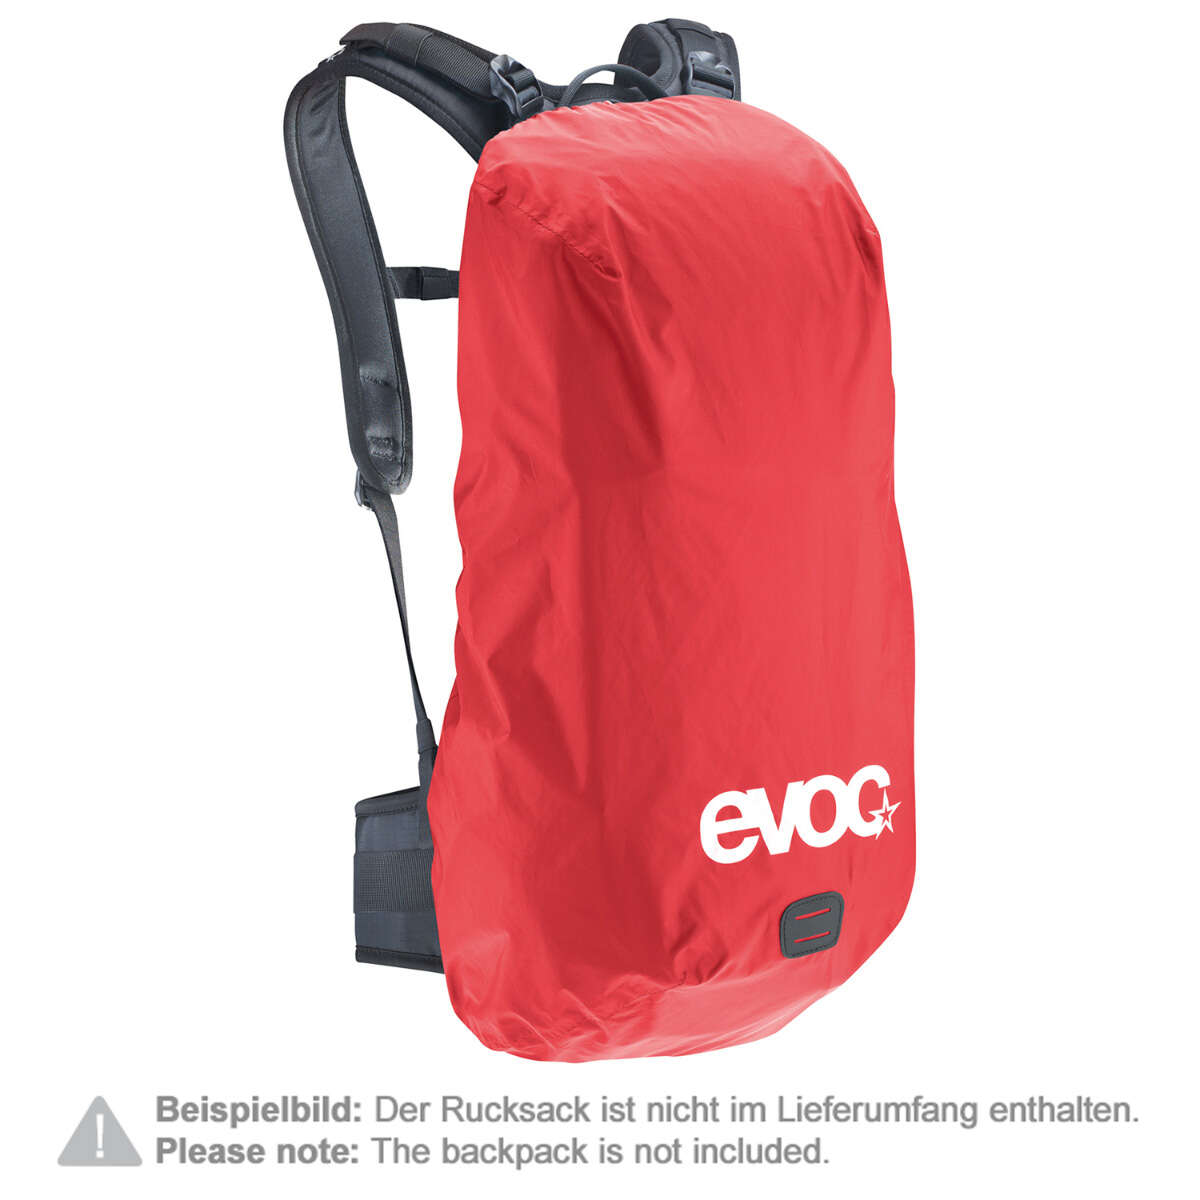 Evoc Backpack Raincover Raincover Sleeve Red, 25-45 Liter